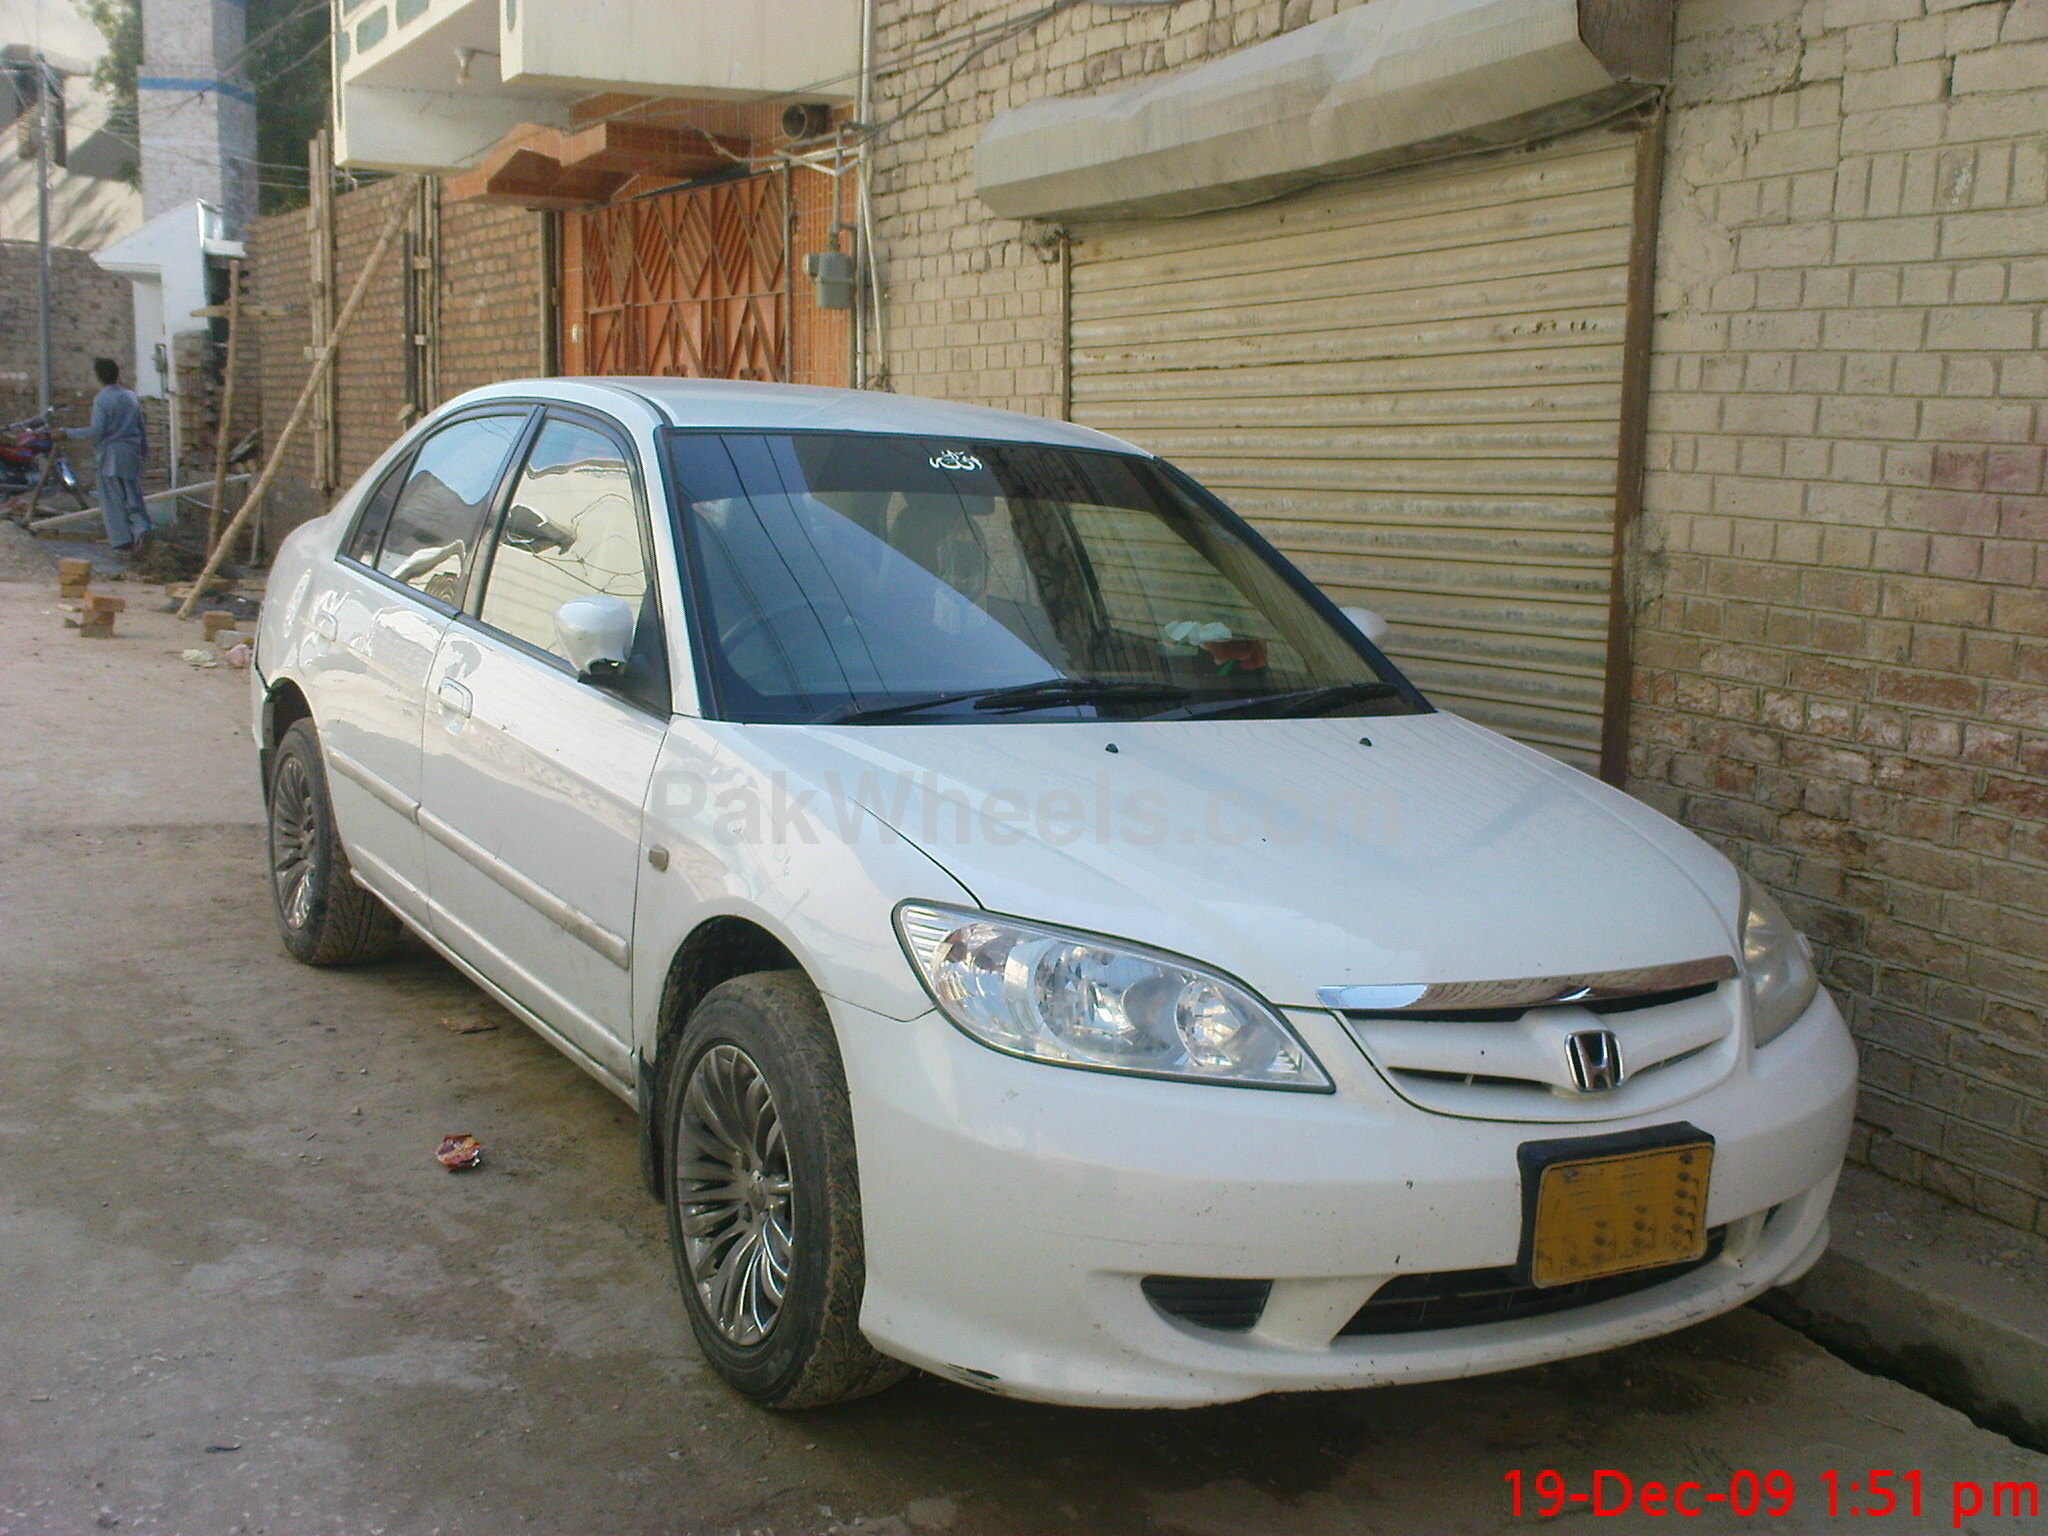 Honda Civic - 2004 CIVIC-04 Image-1